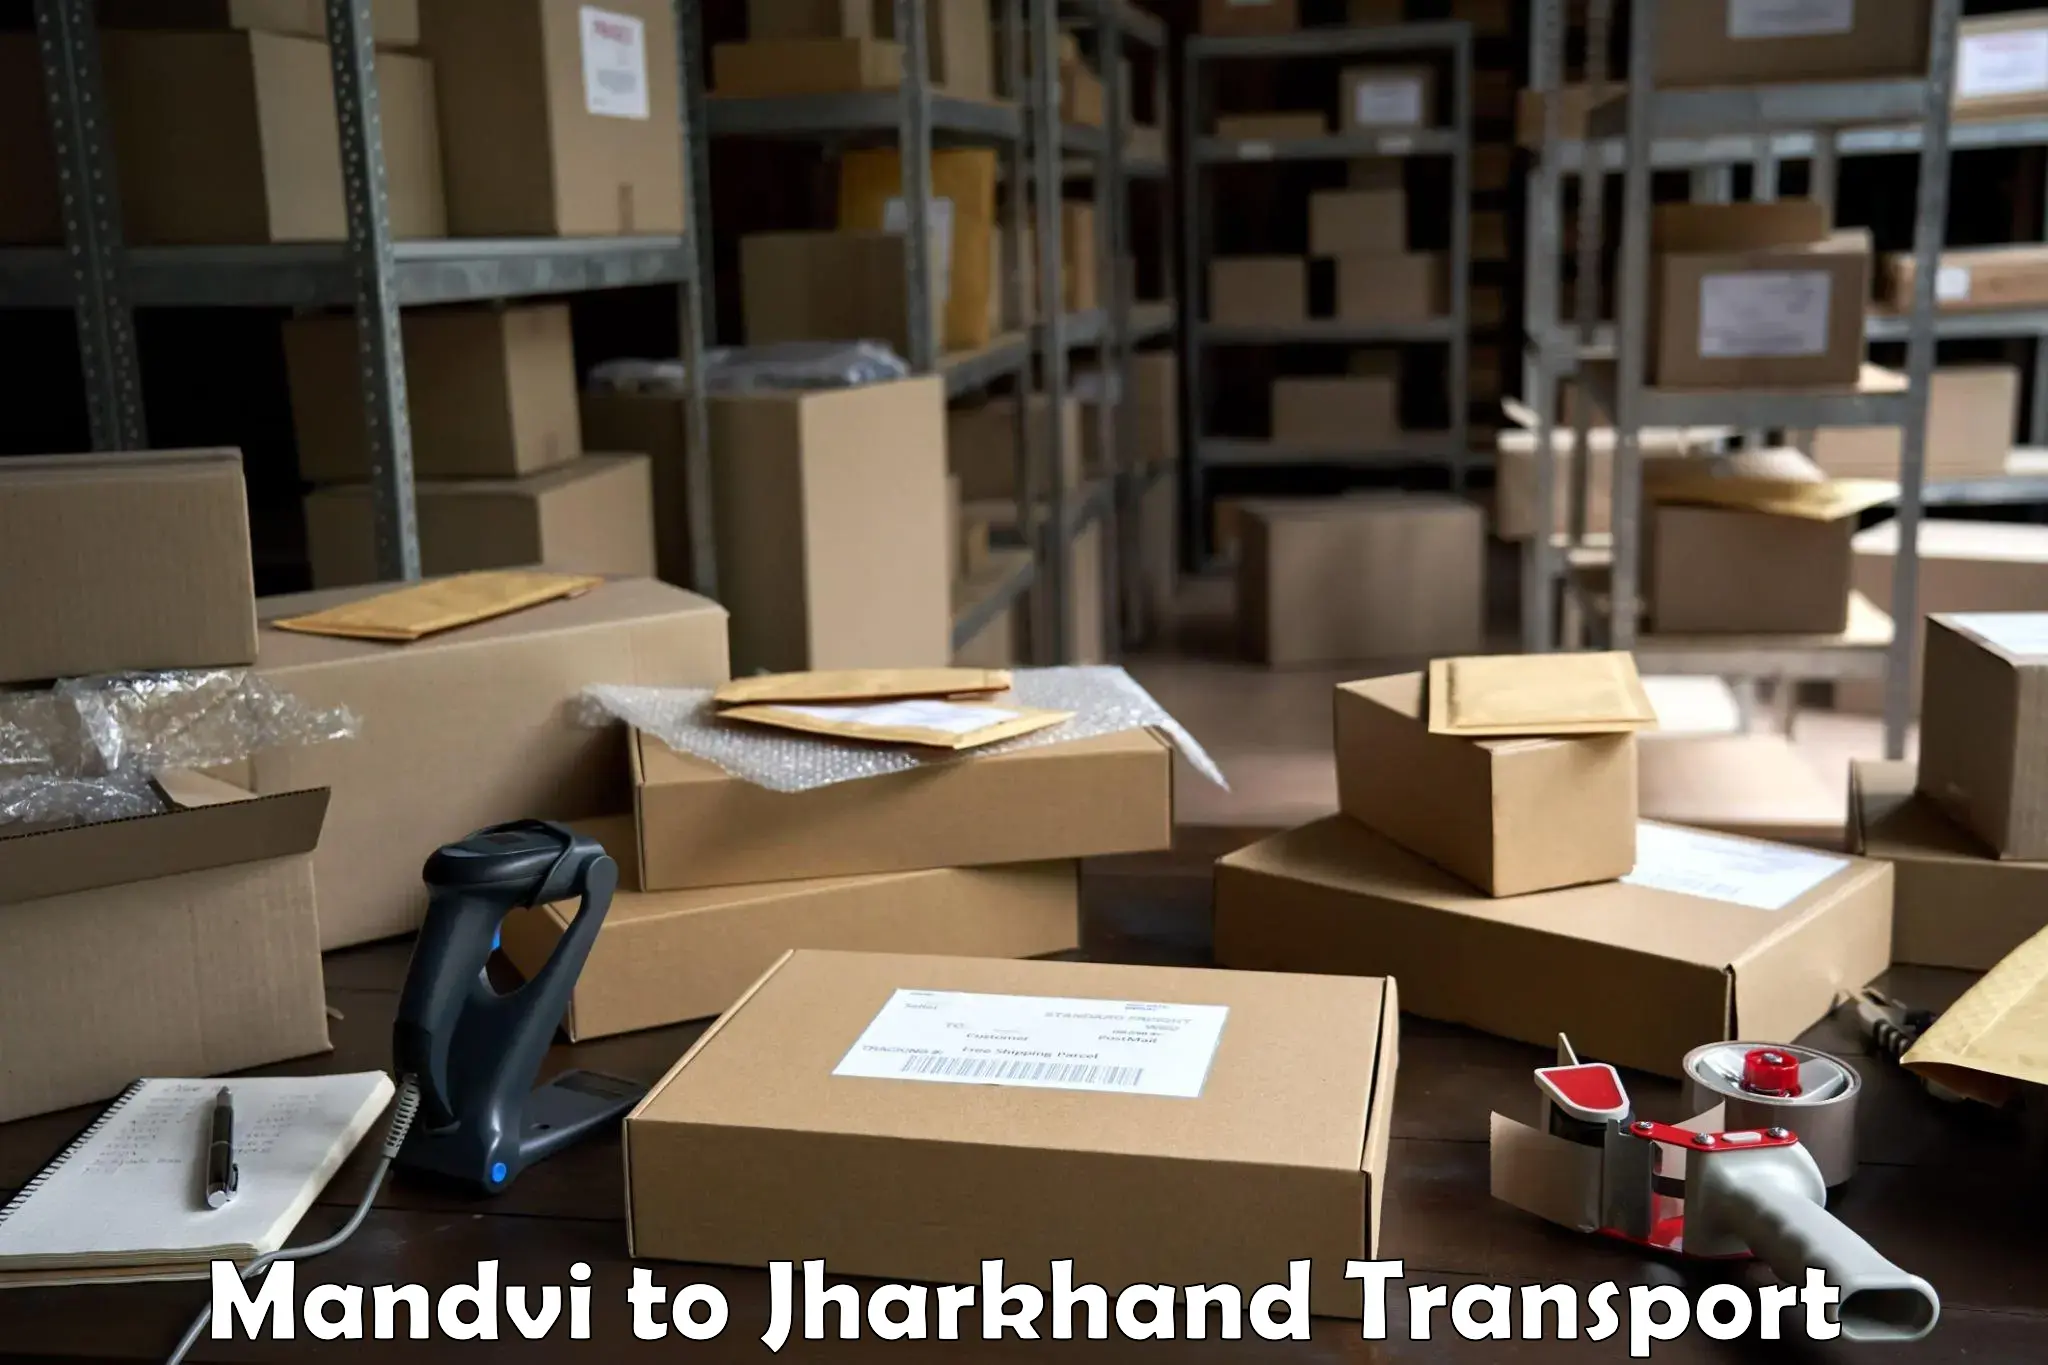 Vehicle transport services Mandvi to Jamshedpur